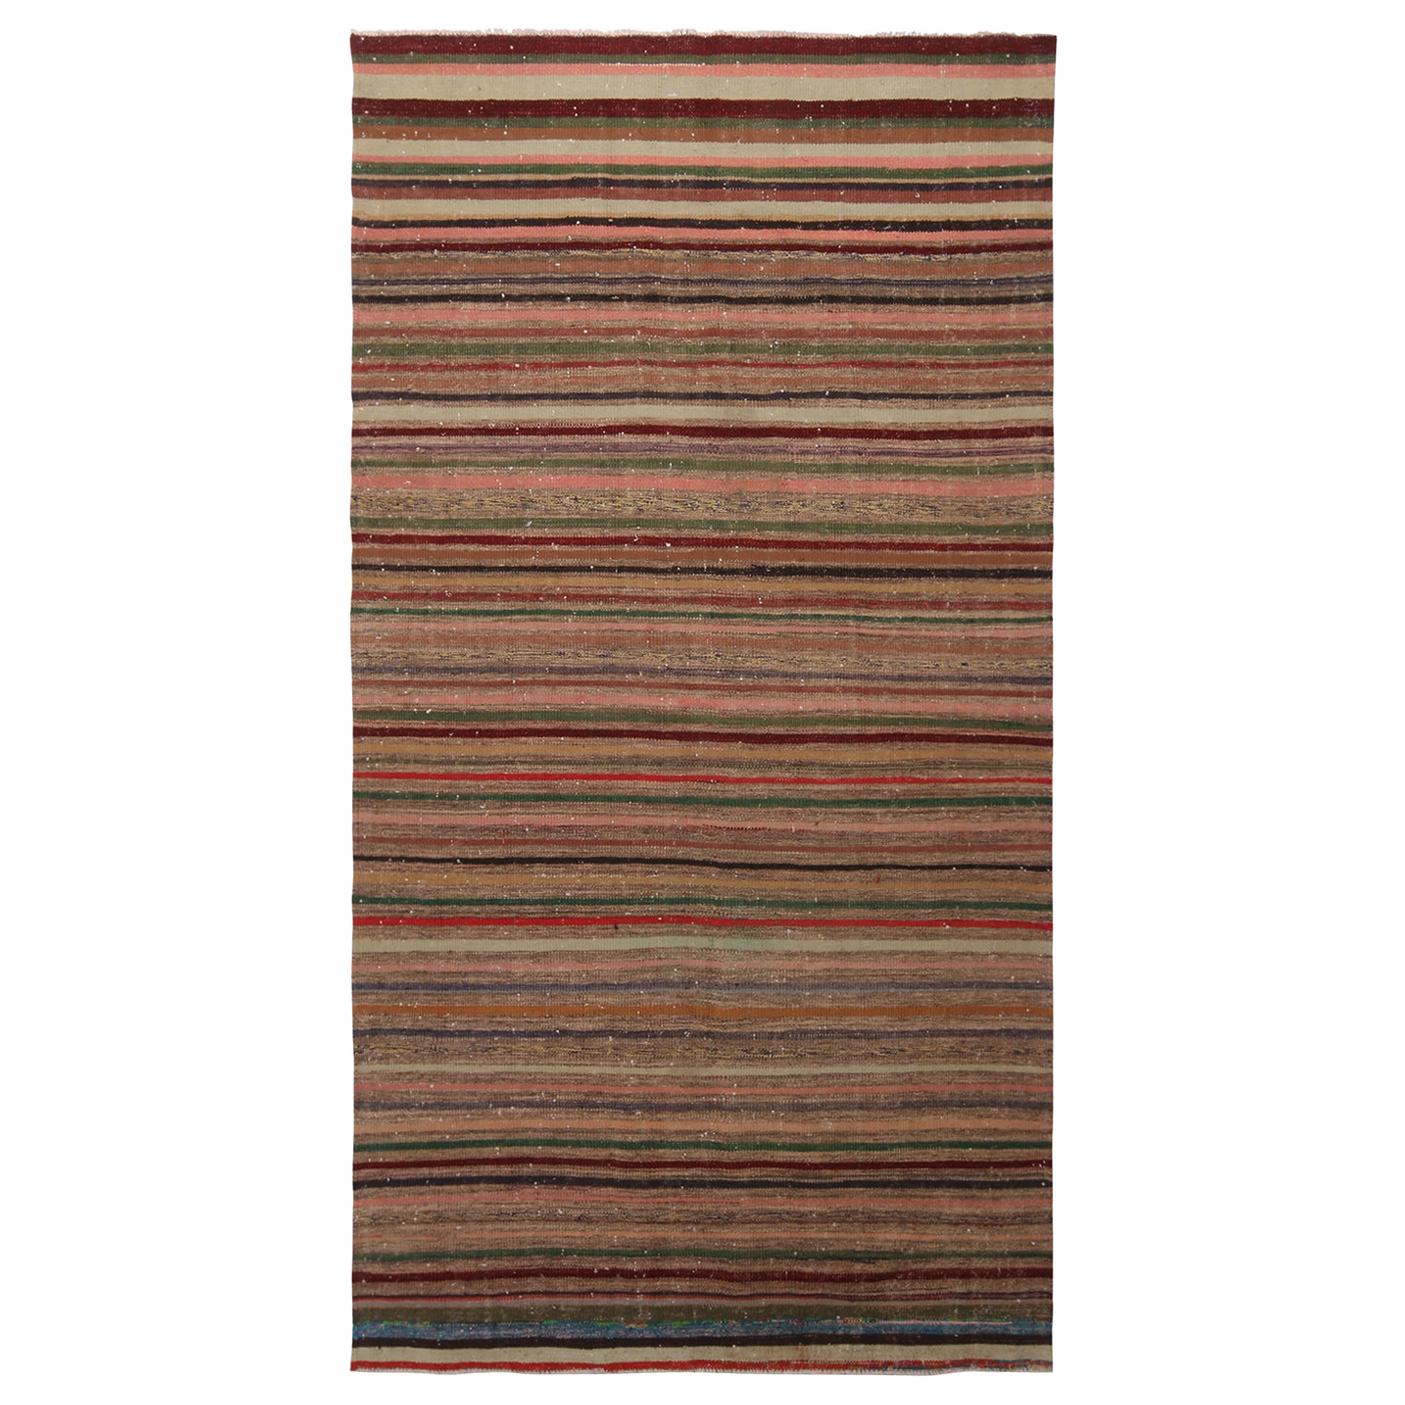 Gestreifter, beiger, brauner und mehrfarbiger Woll-Kelim-Teppich von Teppich & Kilim